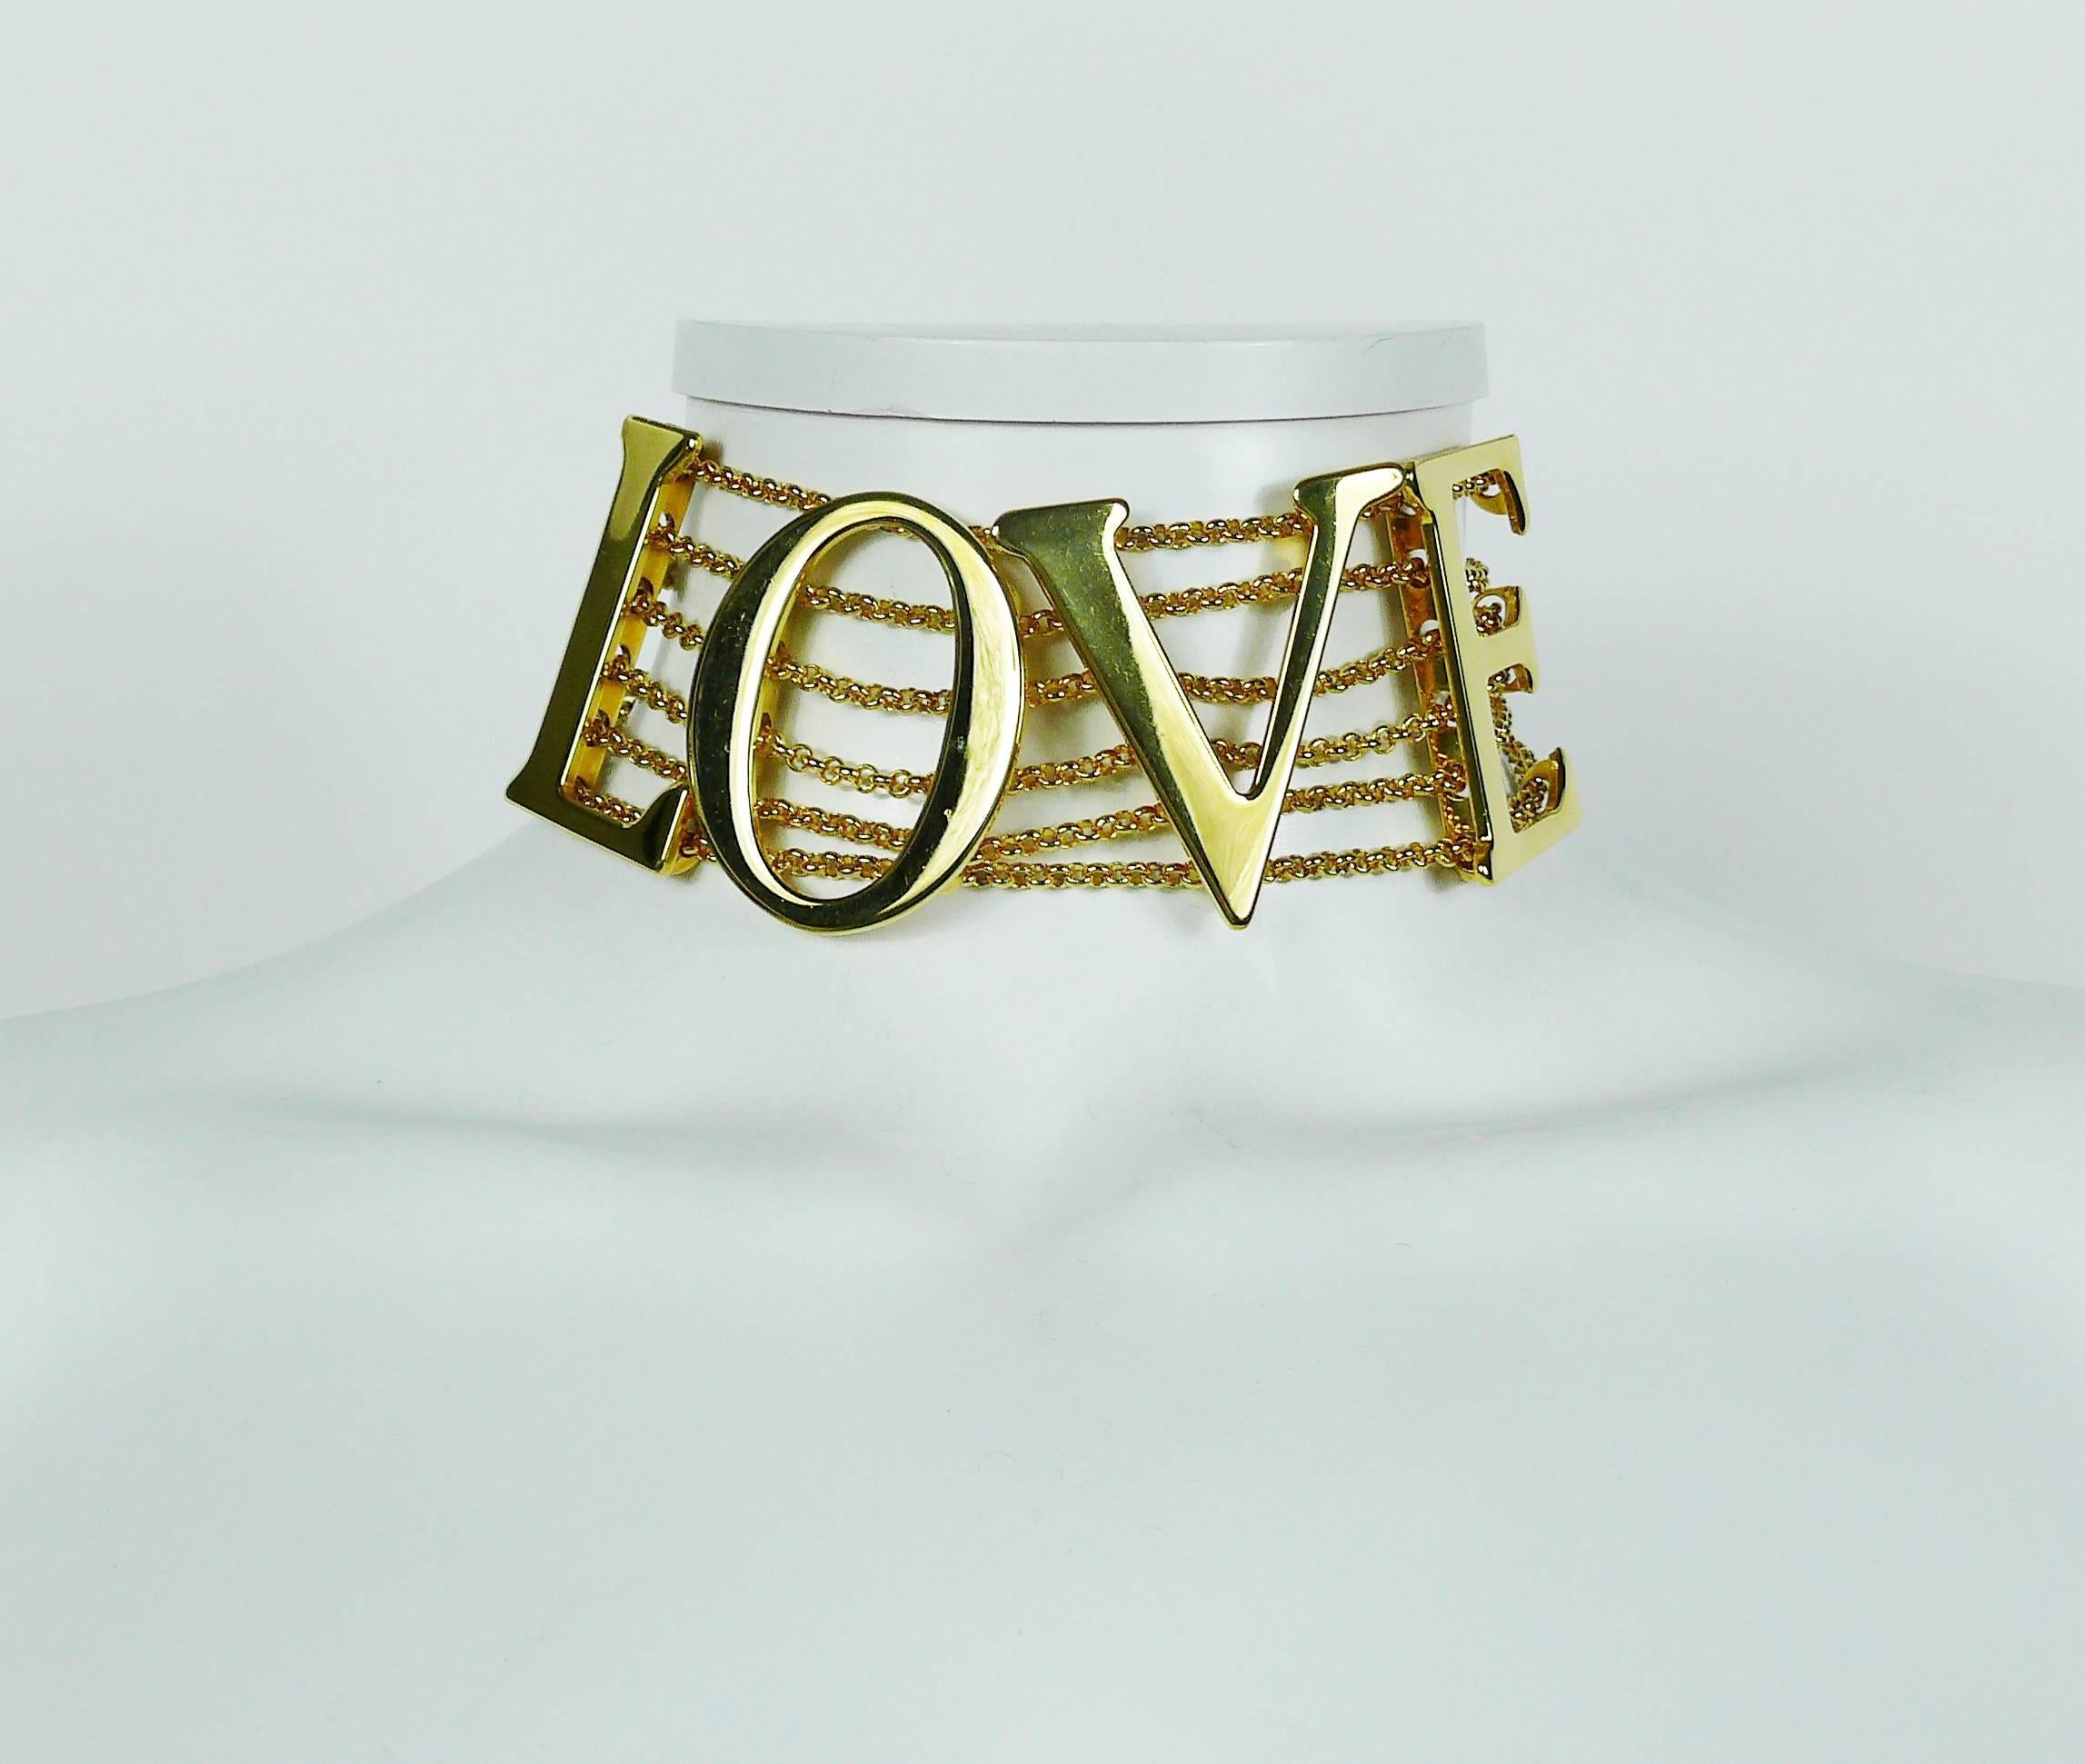 DOLCE & GABBANA ikonische goldfarbene Laufsteg-Halskette mit großen LOVE-Zeichen an sechs Ketten. 

Frühjahr/Sommerkollektion 2003 "LOVE SEX" Kollektion. 
Ähnliches Modell:: getragen von NATALIA VODIANOVA auf dem Laufsteg. 

Die